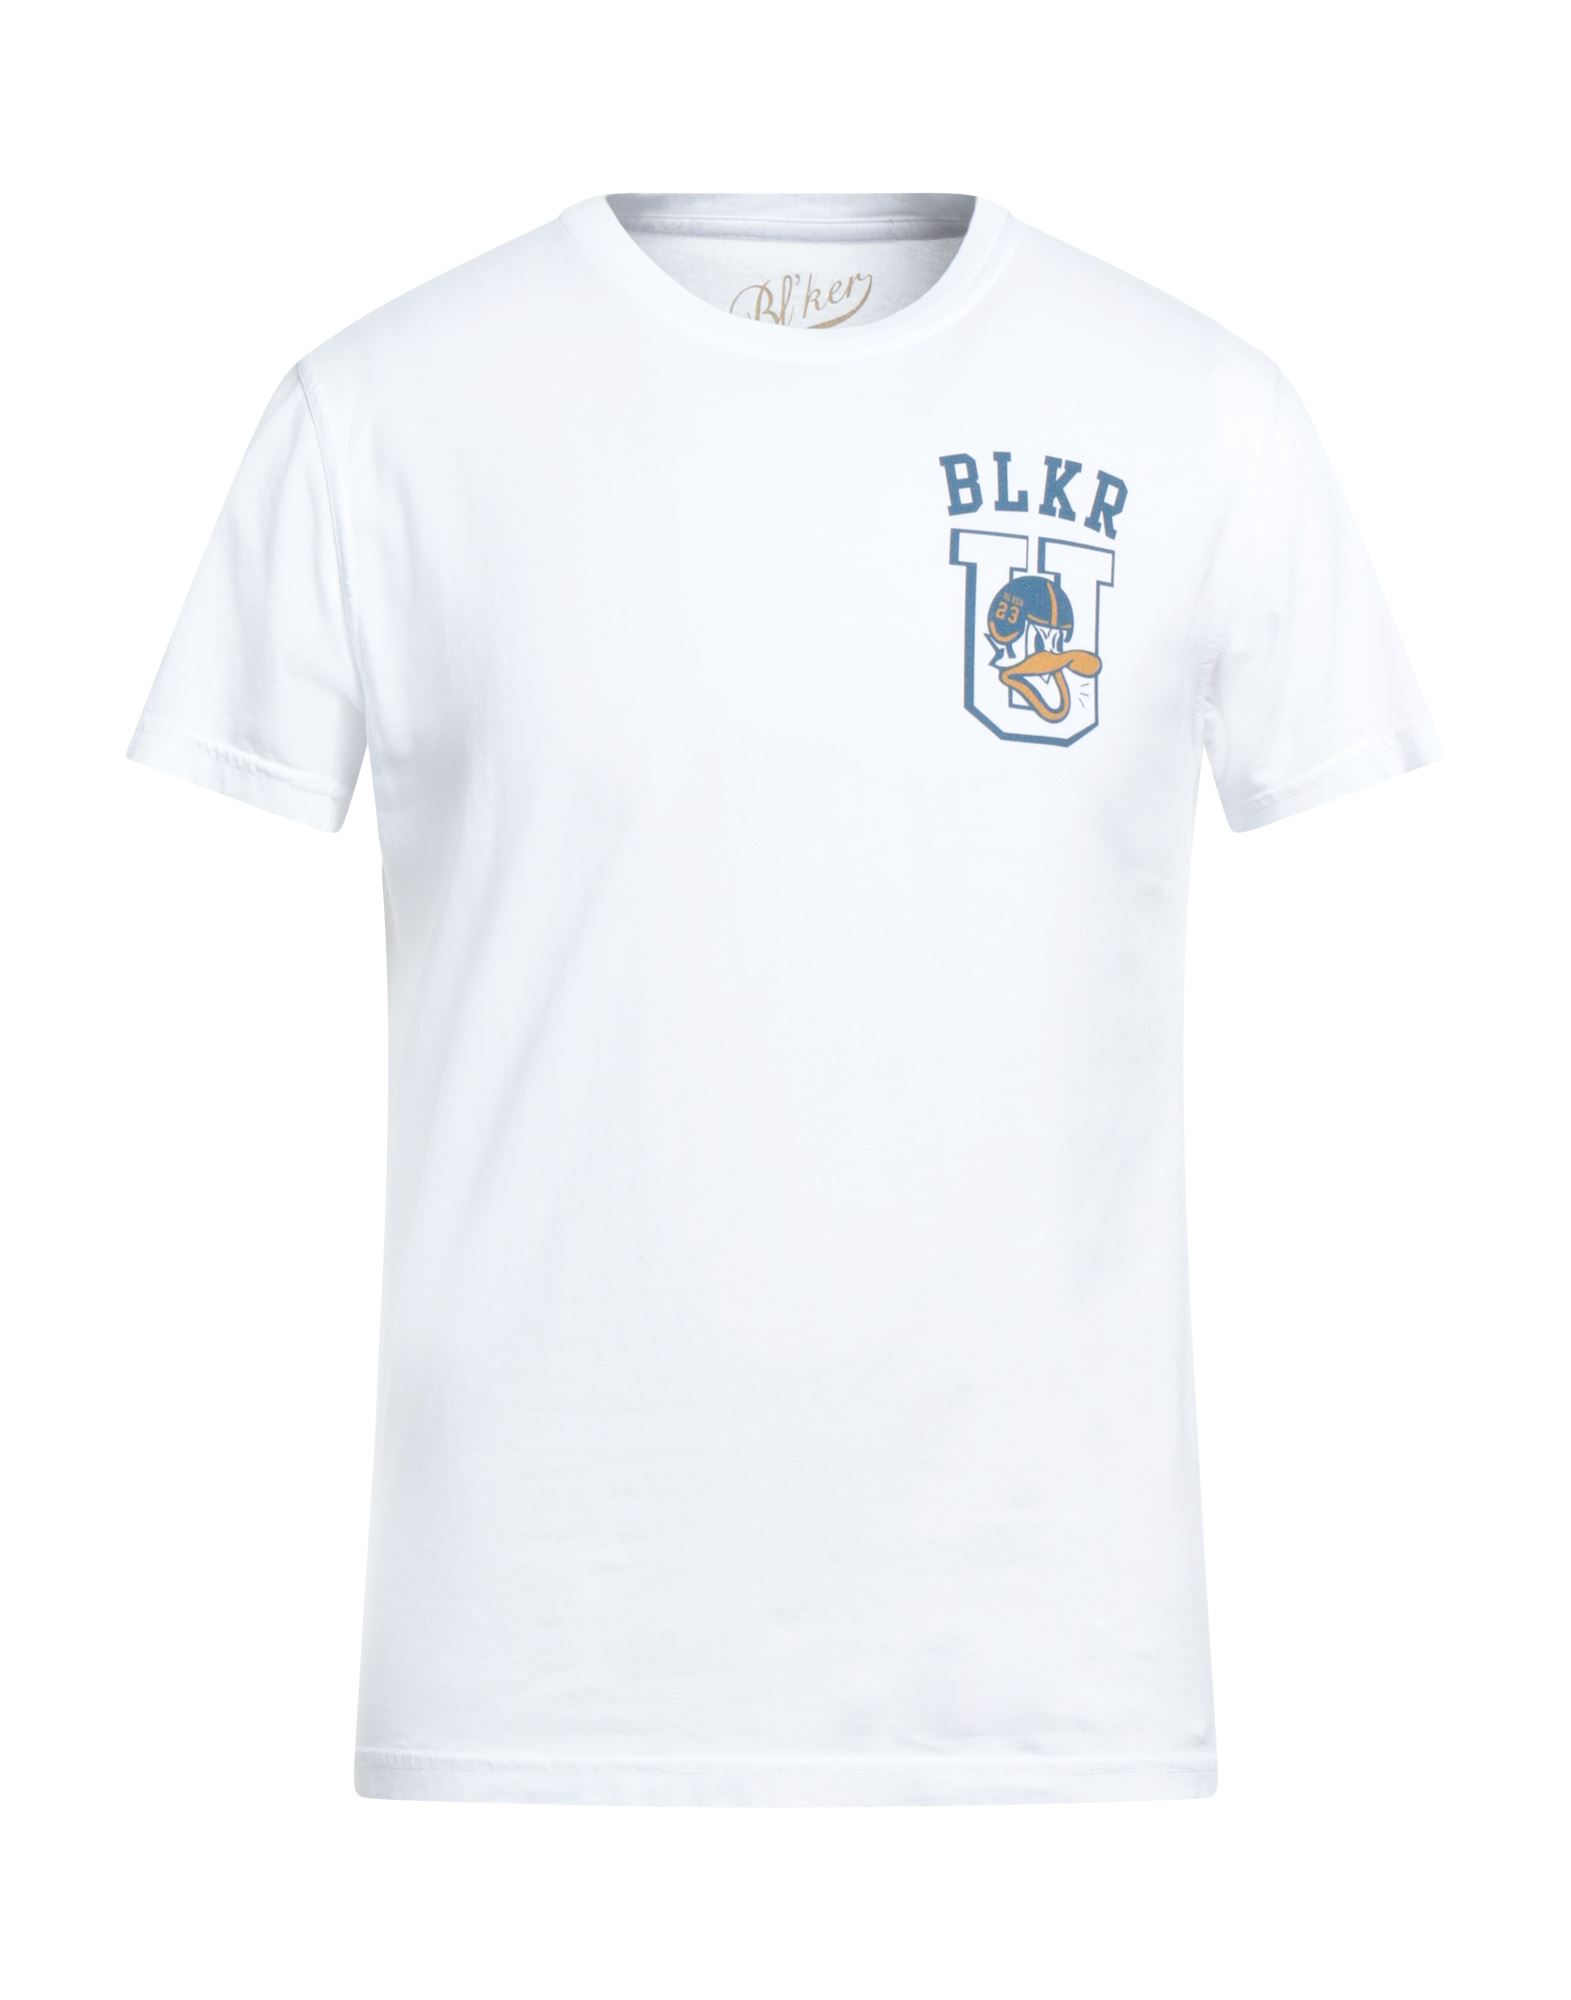 BL'KER T-shirts